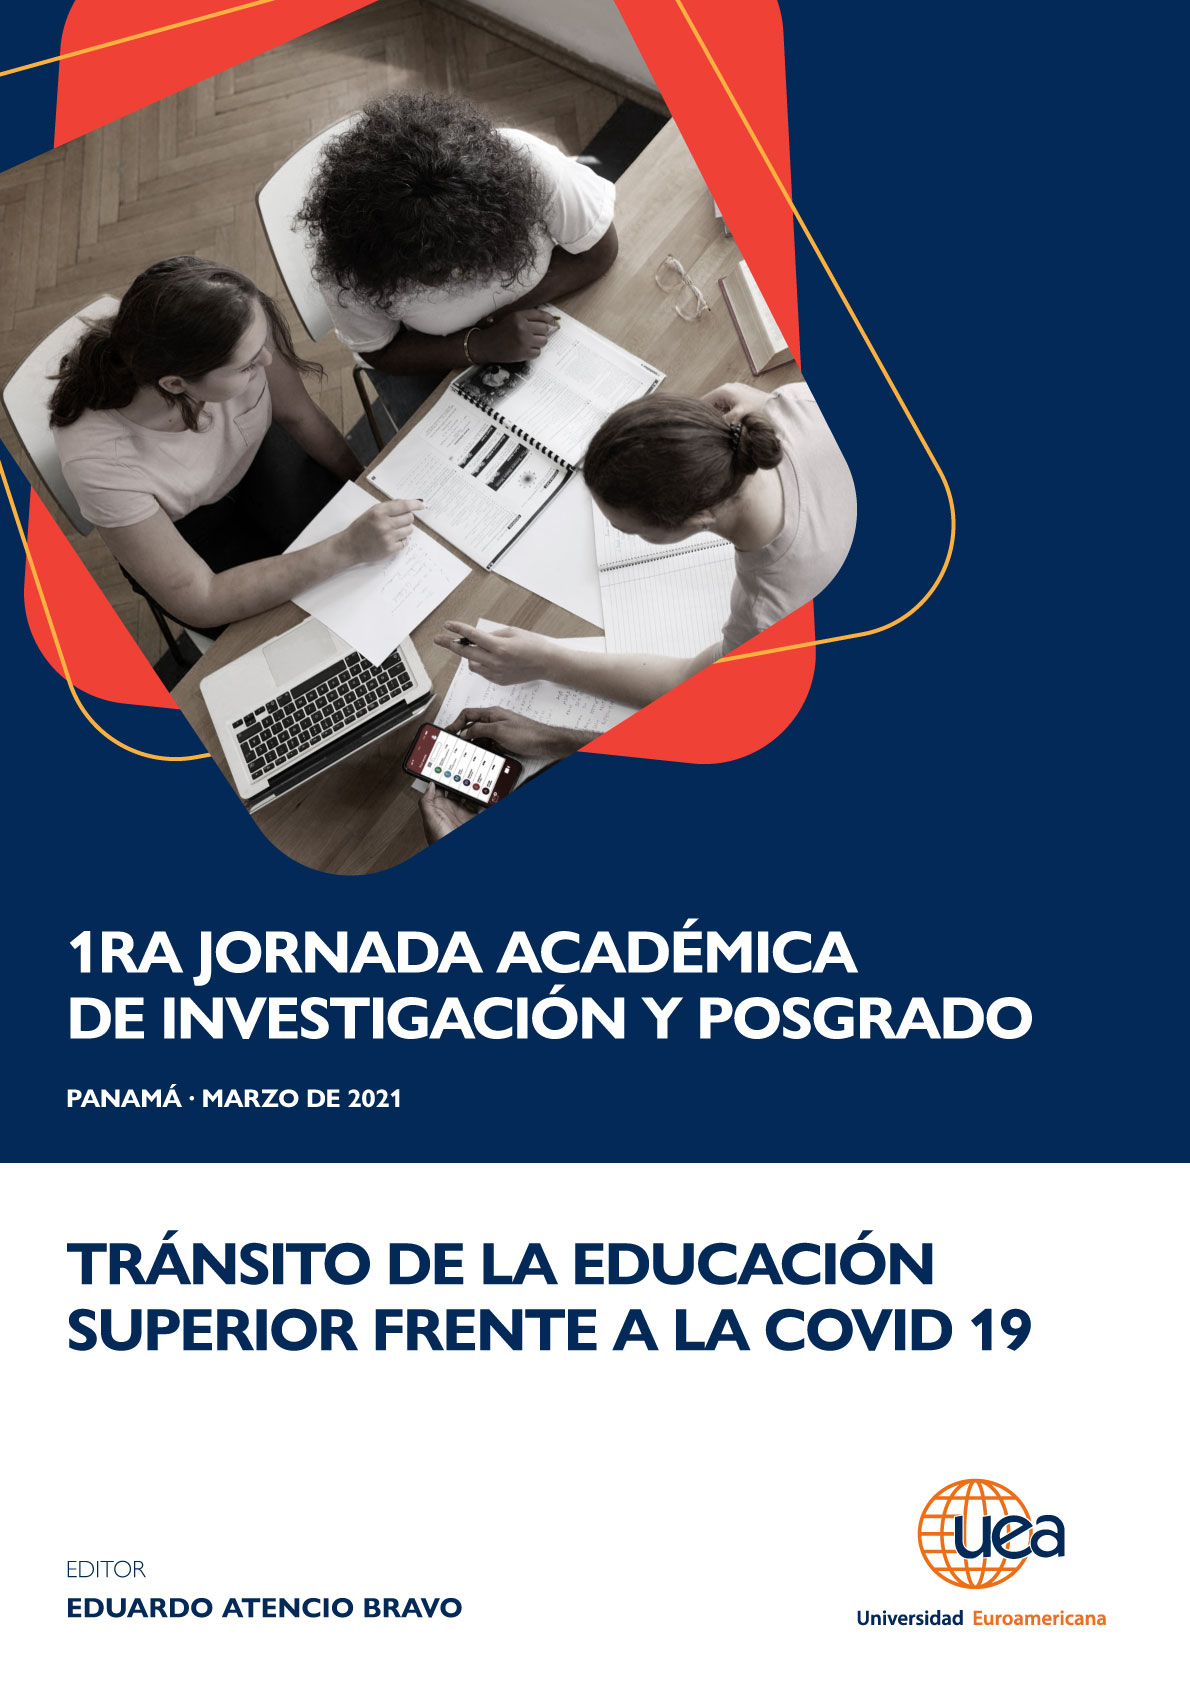 					Ver 1era Jornada Académica de Investigación y Posgrado: "Tránsito de la Educación Superior frente al COVID-19"
				